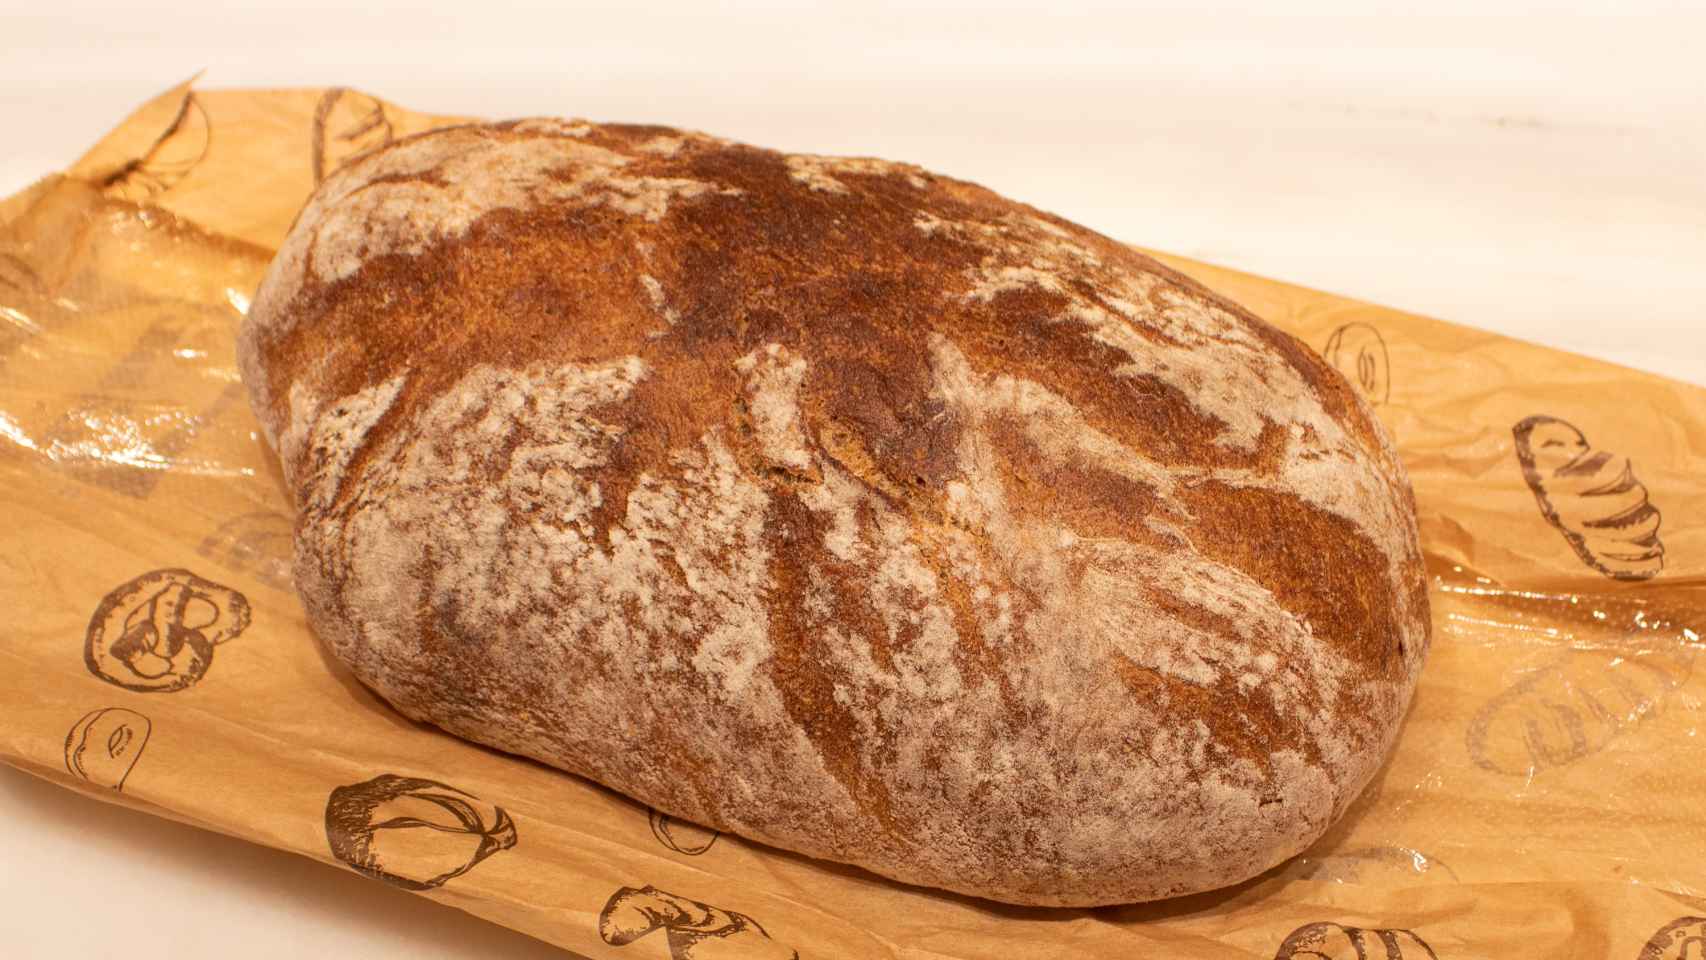 La pieza de pan rústico de Lidl que cuesta 1,99 euros.